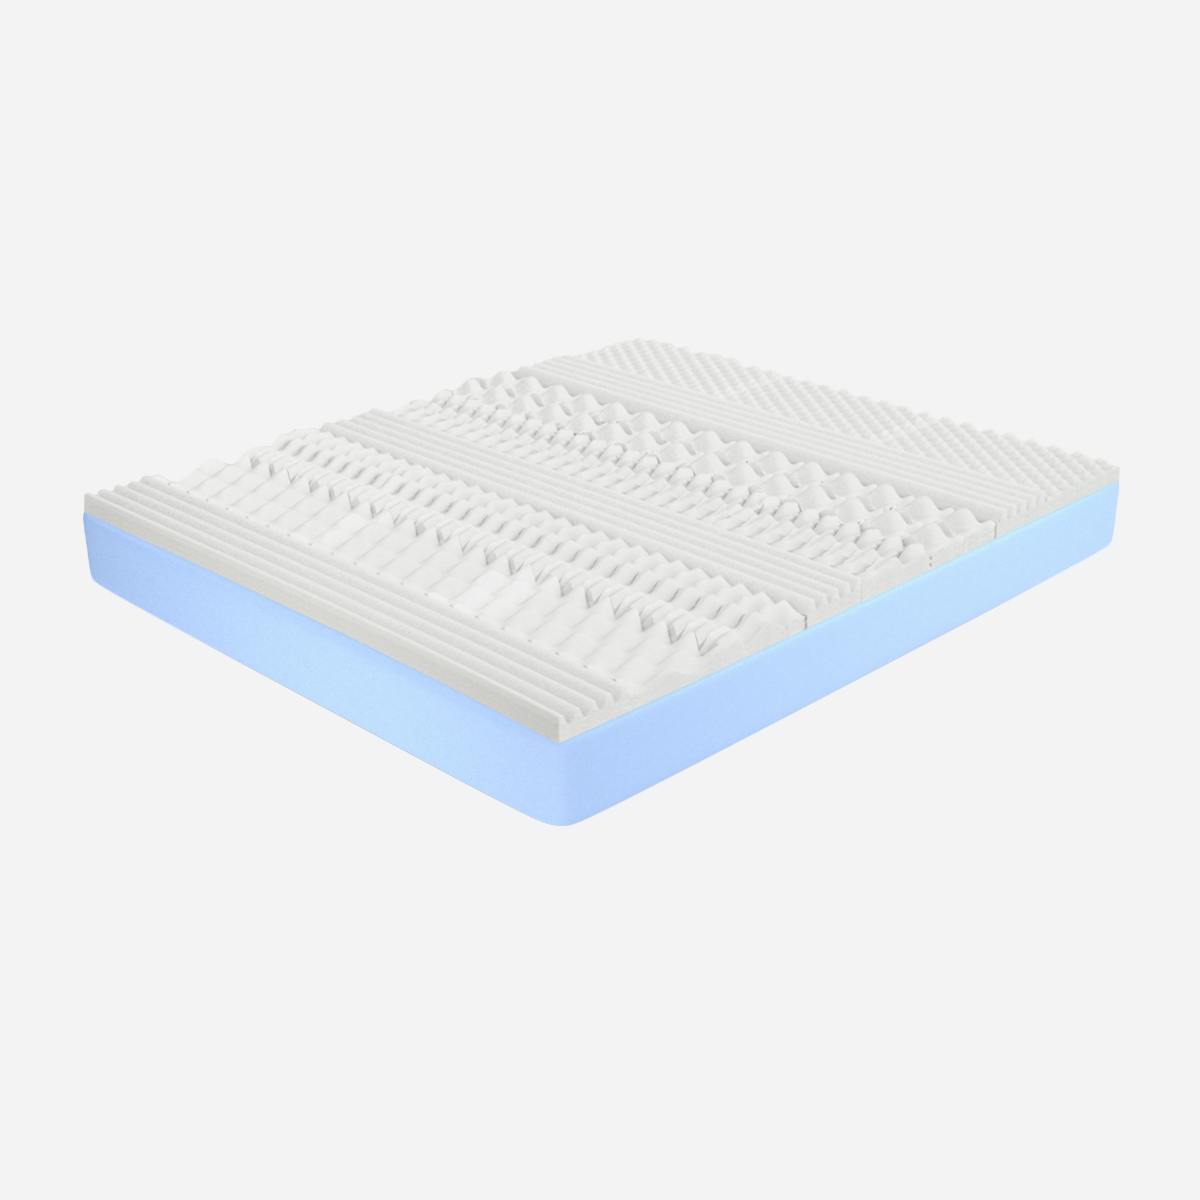 Materasso Singolo 80x190, altezza 22 cm - Memory Foam, Antiacaro